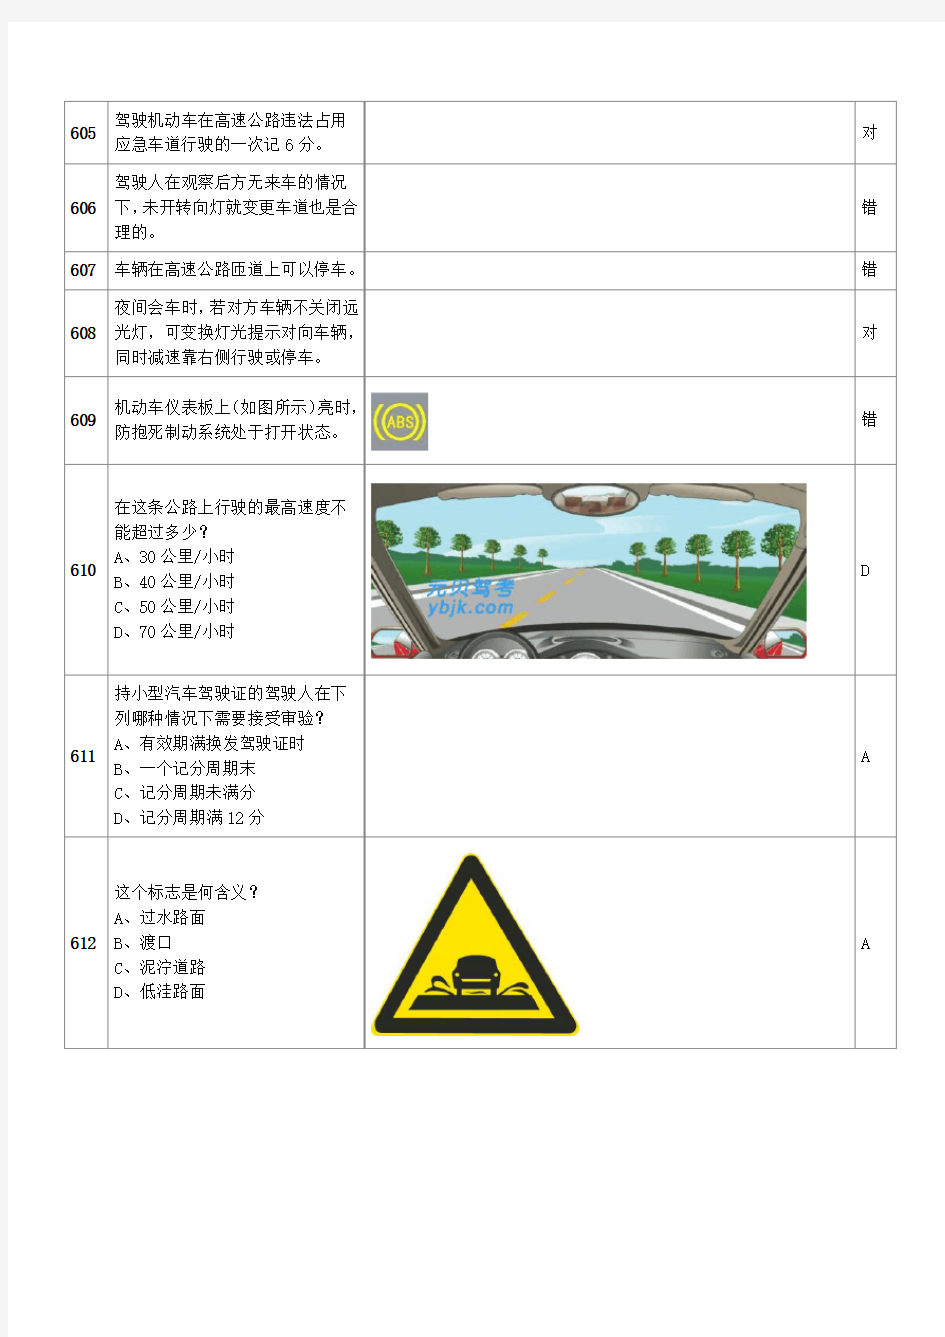 2013年驾照考试科目一题库(三)